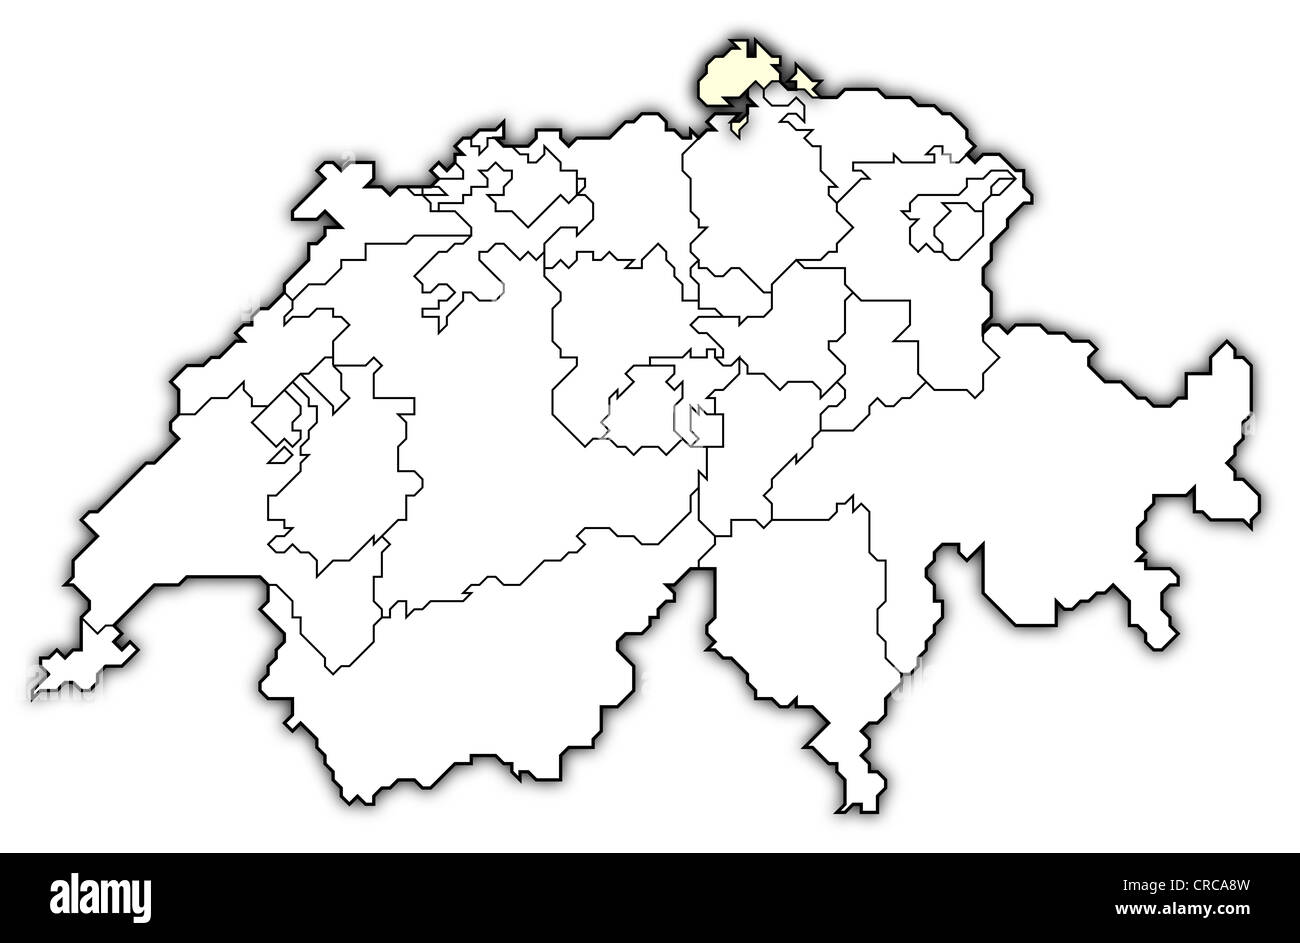 Politische Karte der Schweiz mit den mehreren Kantonen, wo Schaffhausen  markiert ist Stockfotografie - Alamy